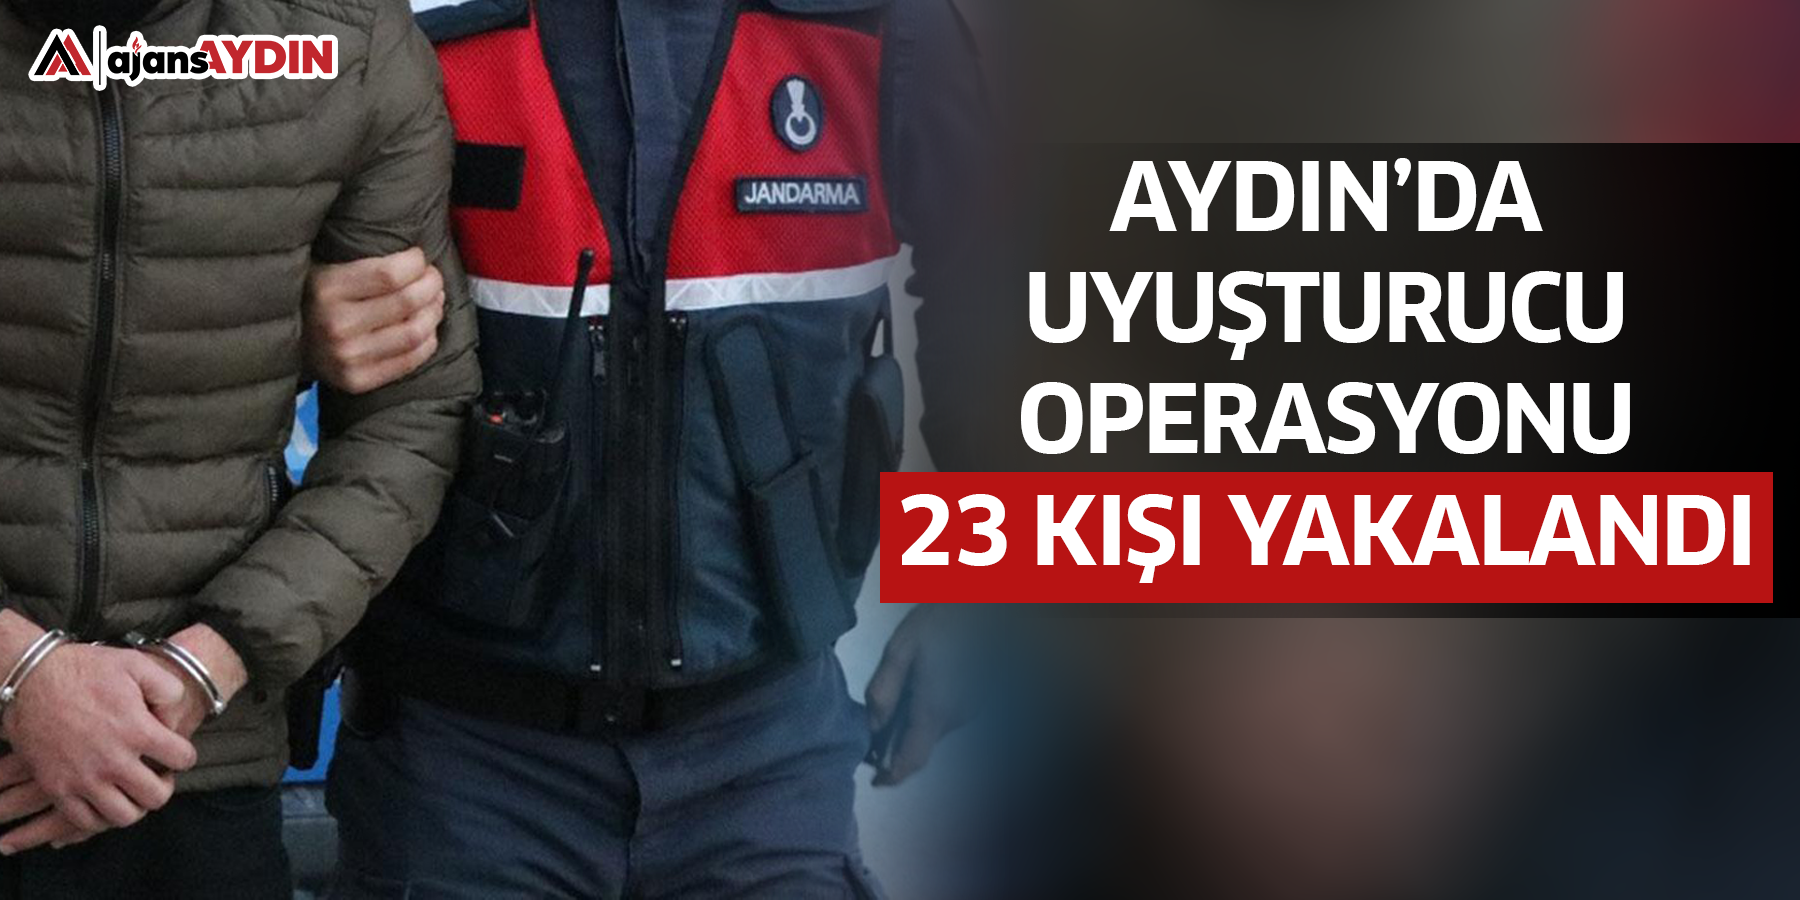 Aydın’da uyuşturucu operasyonu  23 kişi yakalandı